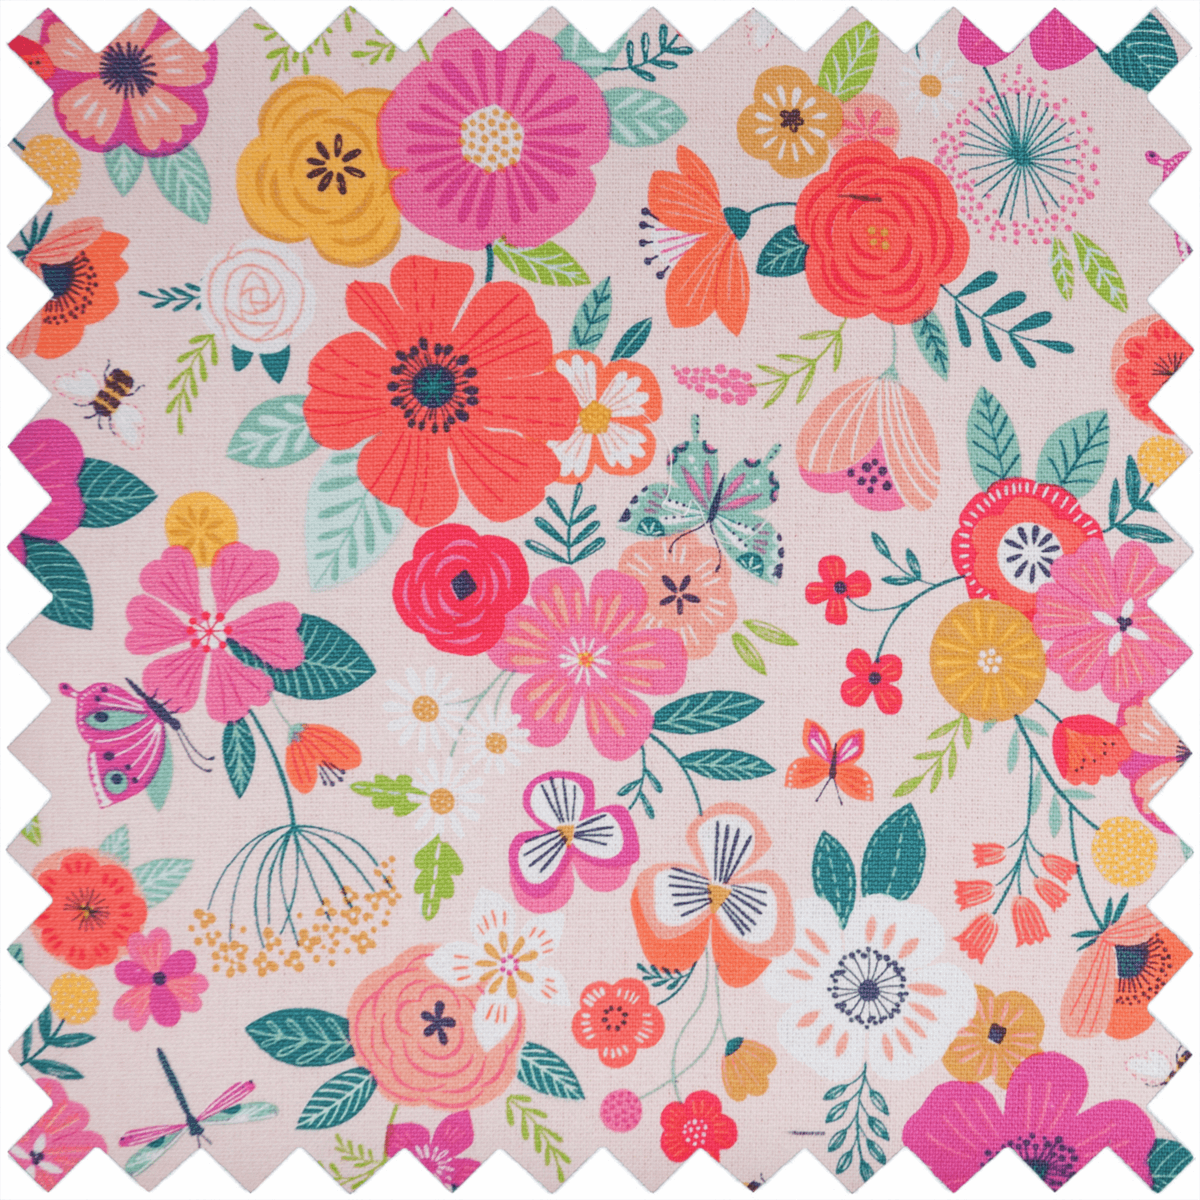 Knitting Pin & Crochet Hook Case - Pink Floral Garden